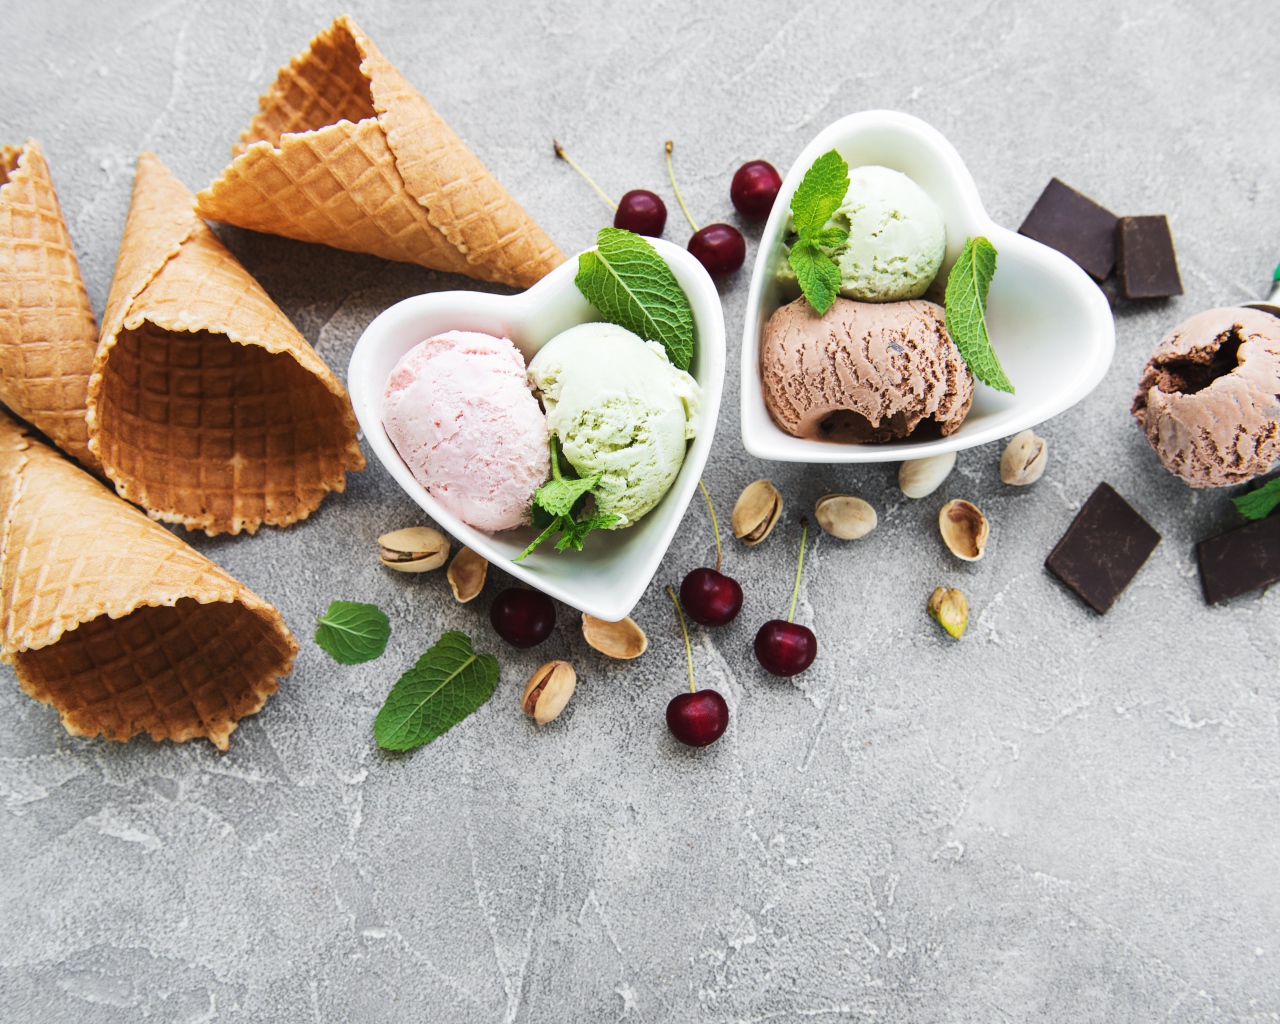 Мороженое на столе с вафельными рожками, шоколадом, вишней  и фисташками